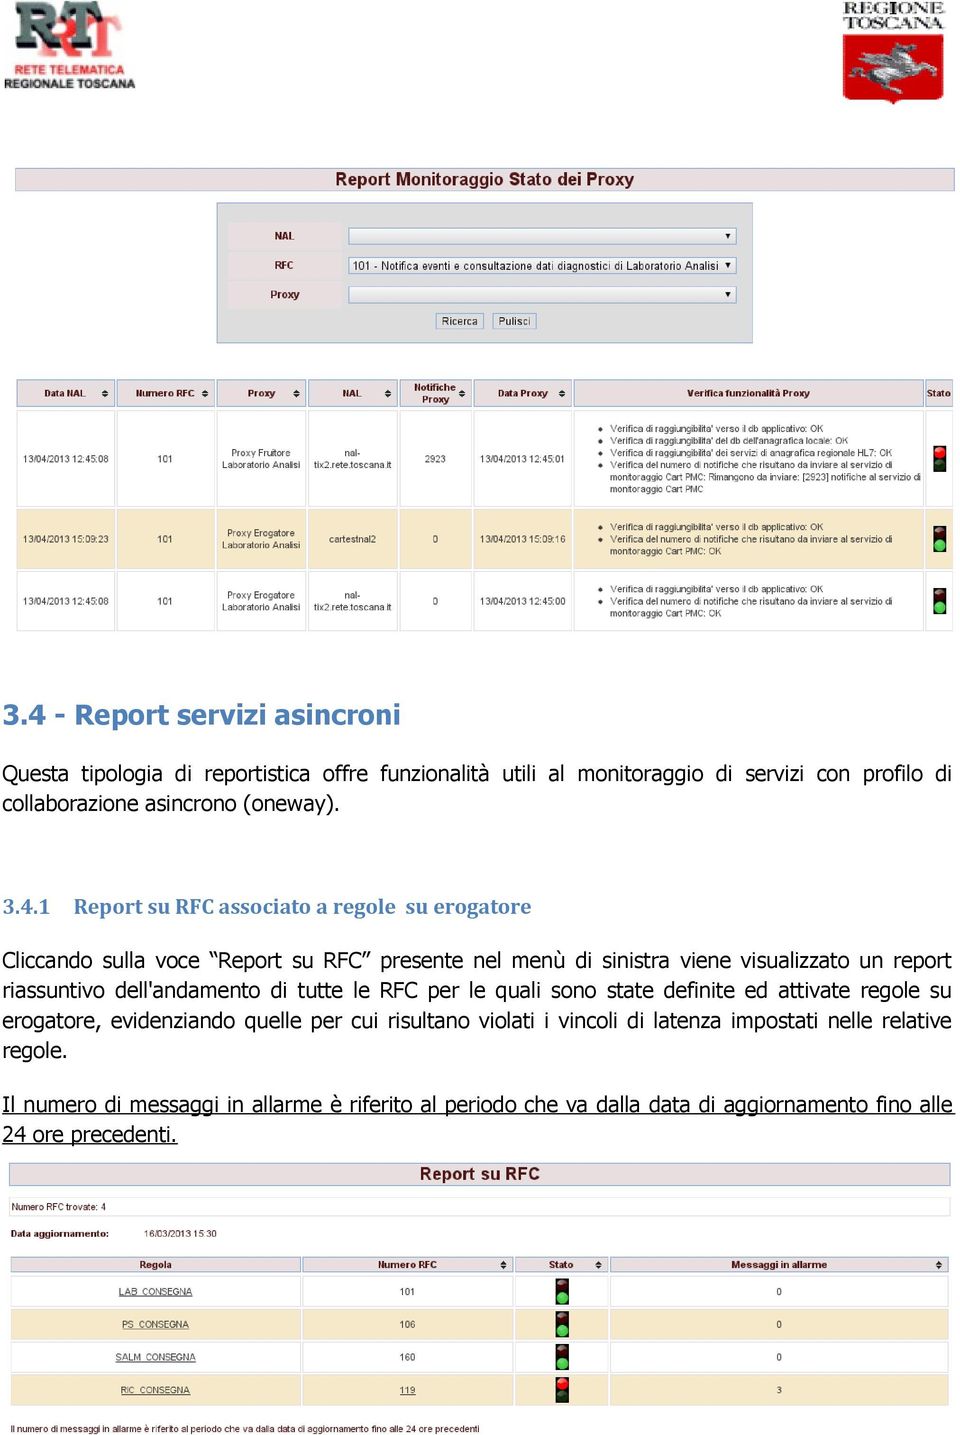 1 Report su RFC associato a regole su erogatore Cliccando sulla voce Report su RFC presente nel menù di sinistra viene visualizzato un report riassuntivo